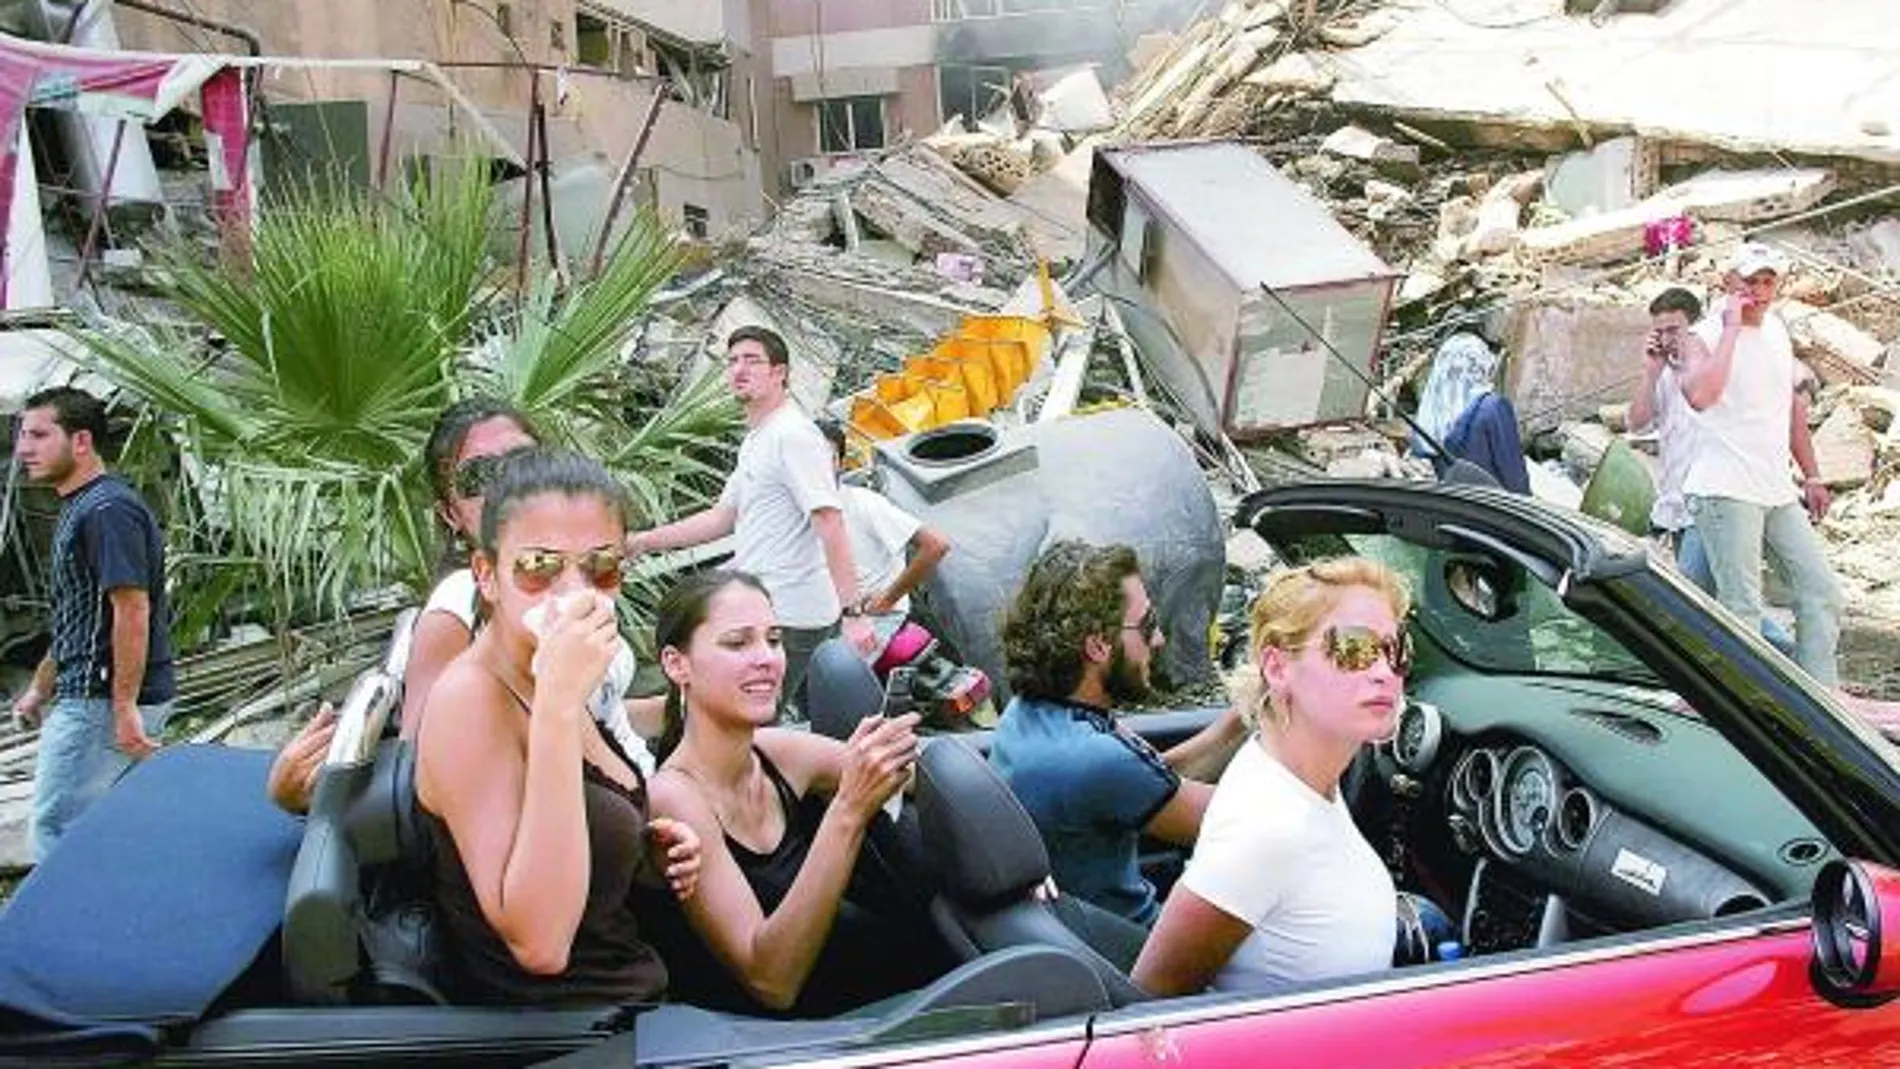 Fotografía ganadora del premio World Press Photo en 2006 en la que aparecen unos jóvenes visitando un barrio devastado en el sur de Beirut, Líbano